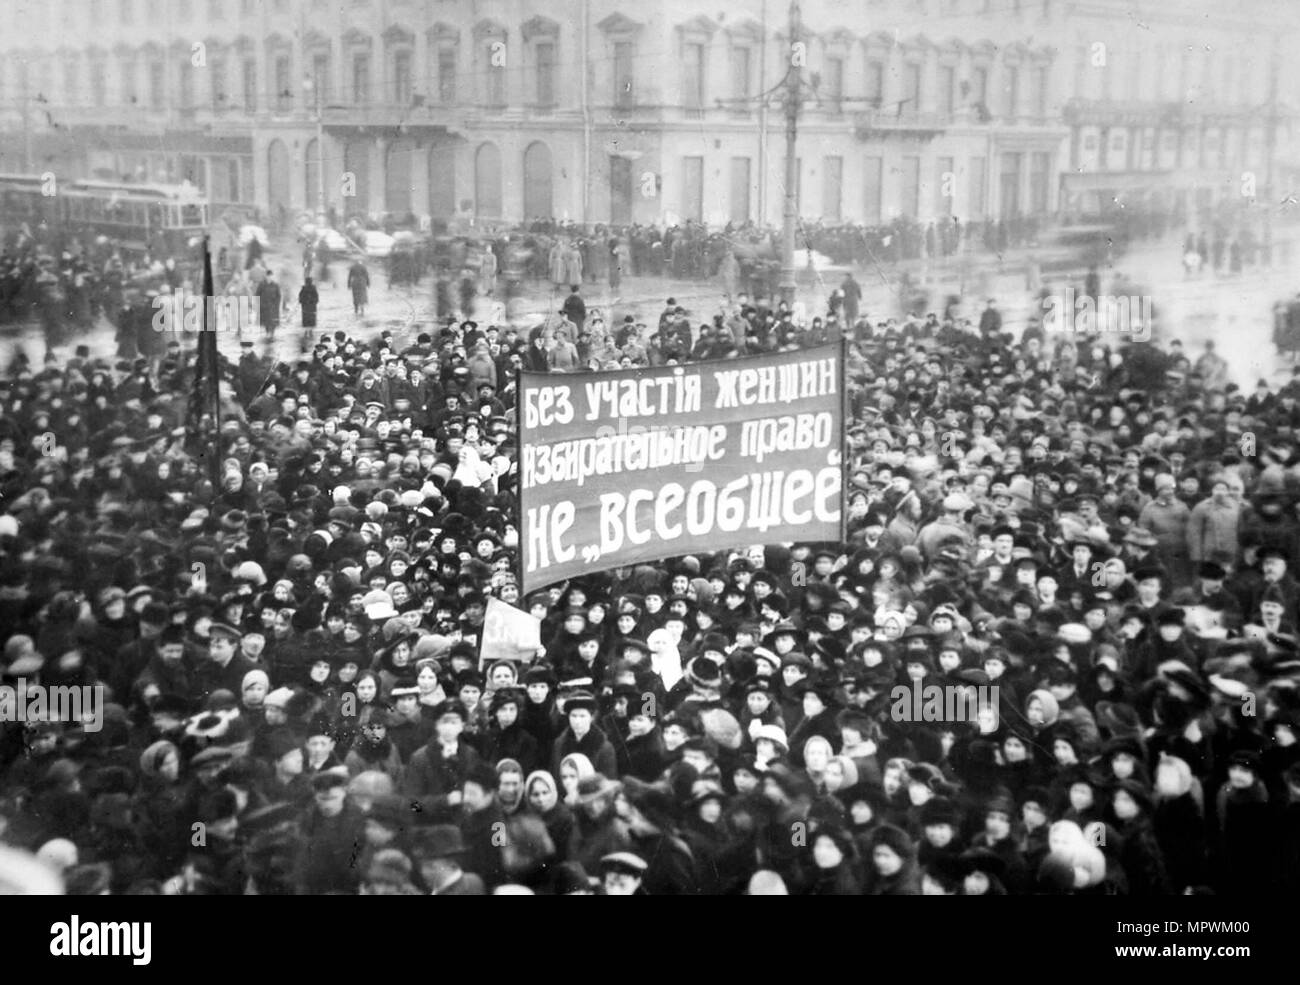 Le suffrage des femmes manifestation sur la Perspective Nevski à Petrograd, le 8 mars 1917, 1917. Banque D'Images